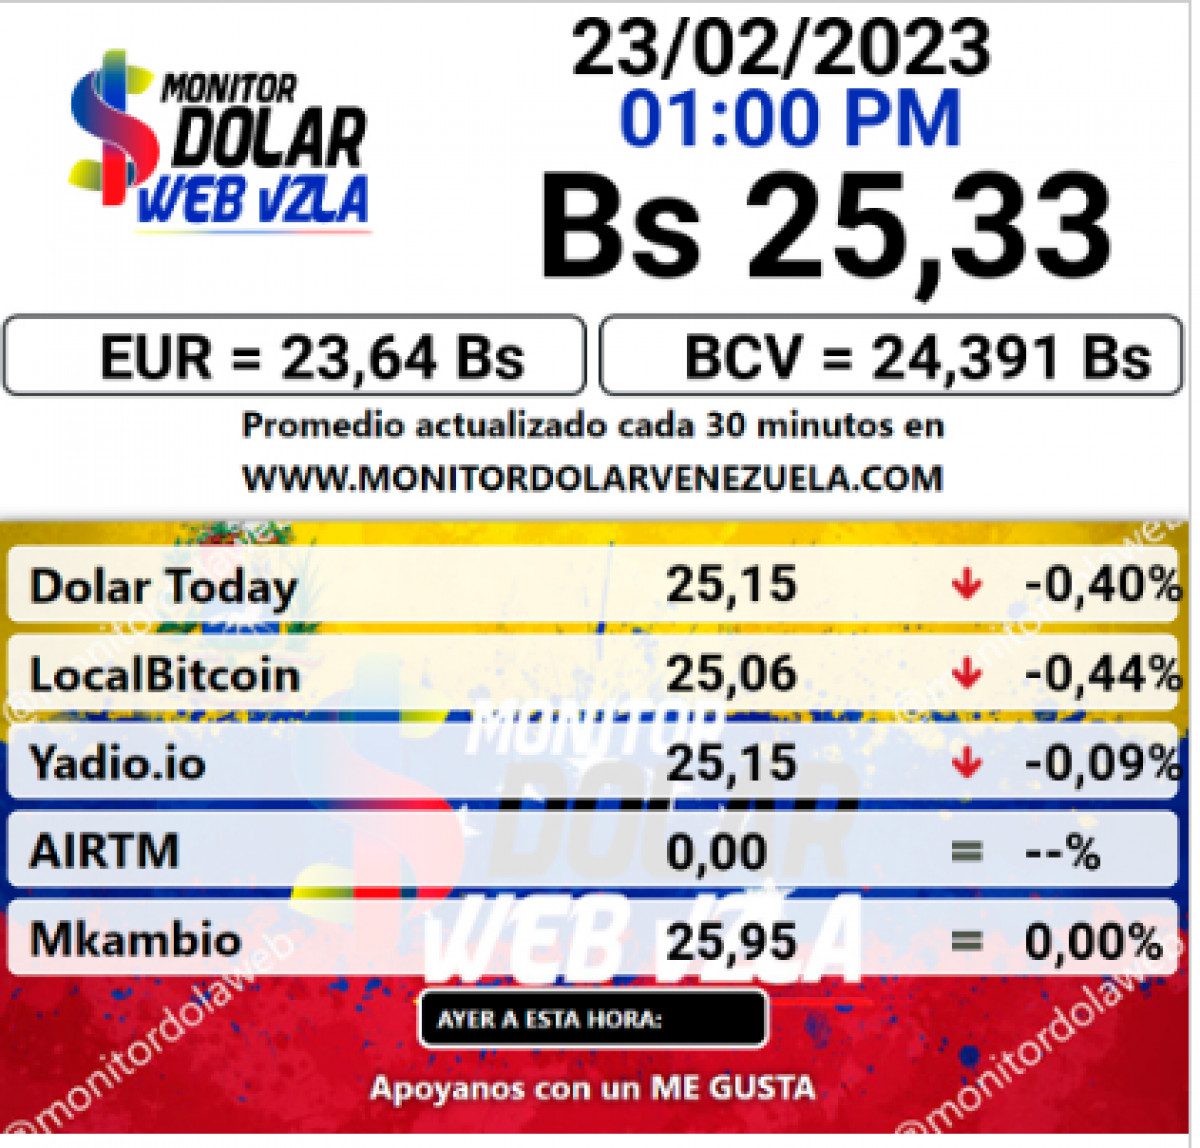 dolartoday en venezuela precio del dolar este jueves 23 de febrero de 2023 laverdaddemonagas.com monitor dolar1132